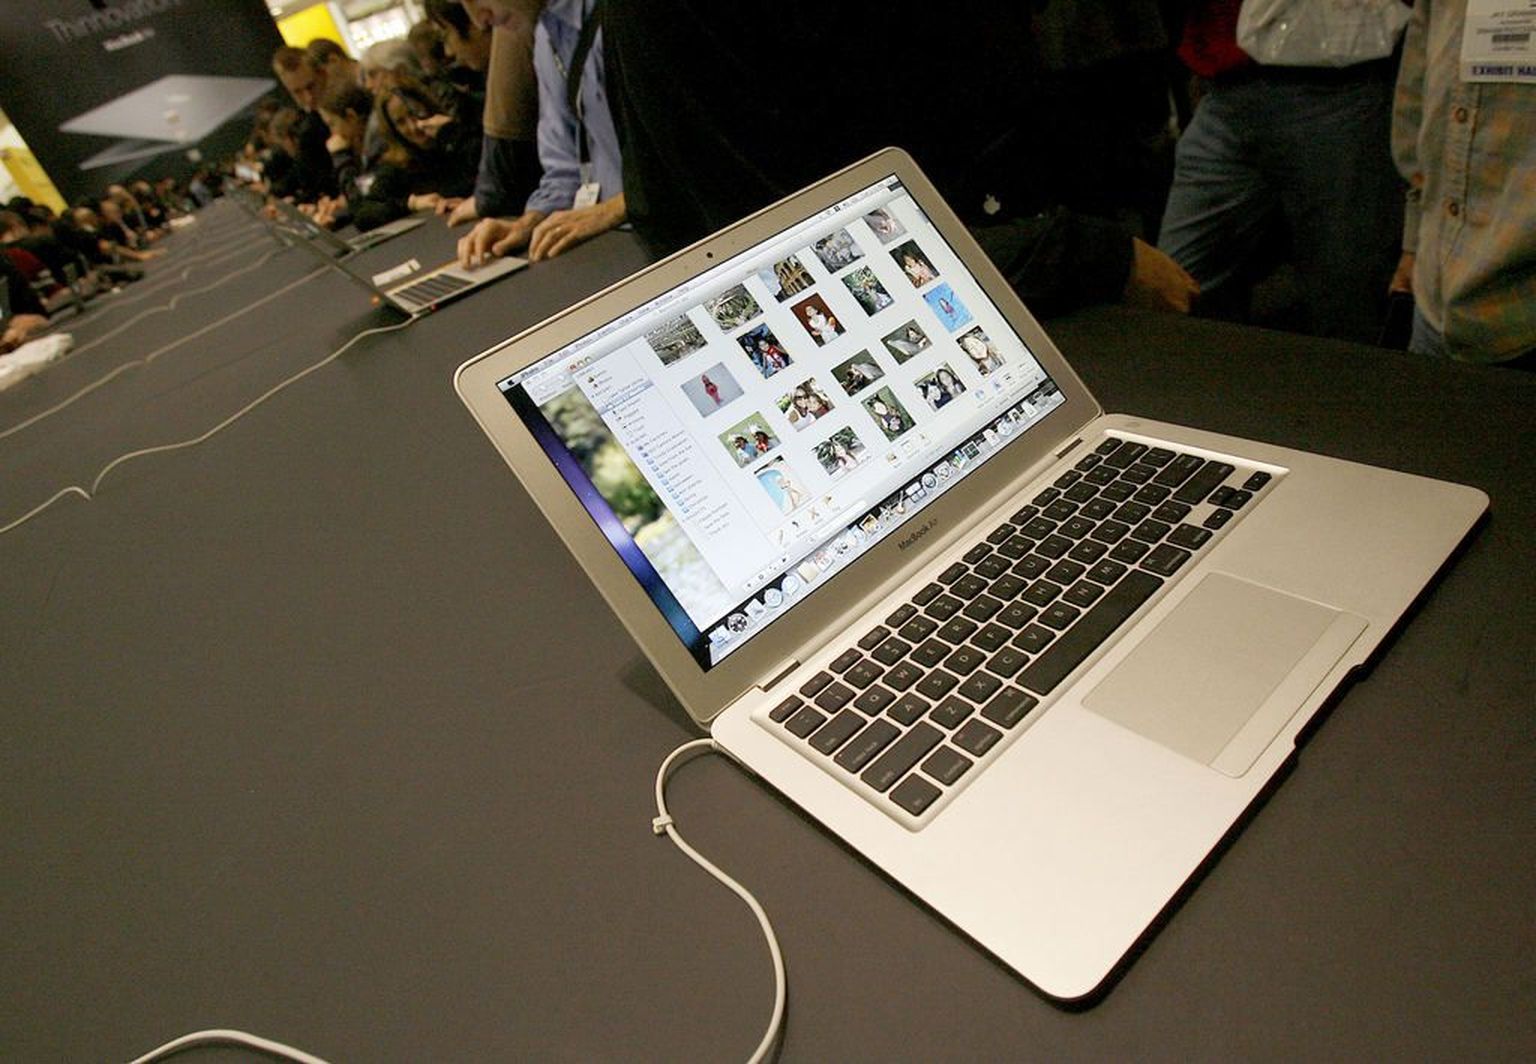 MacBook Air.